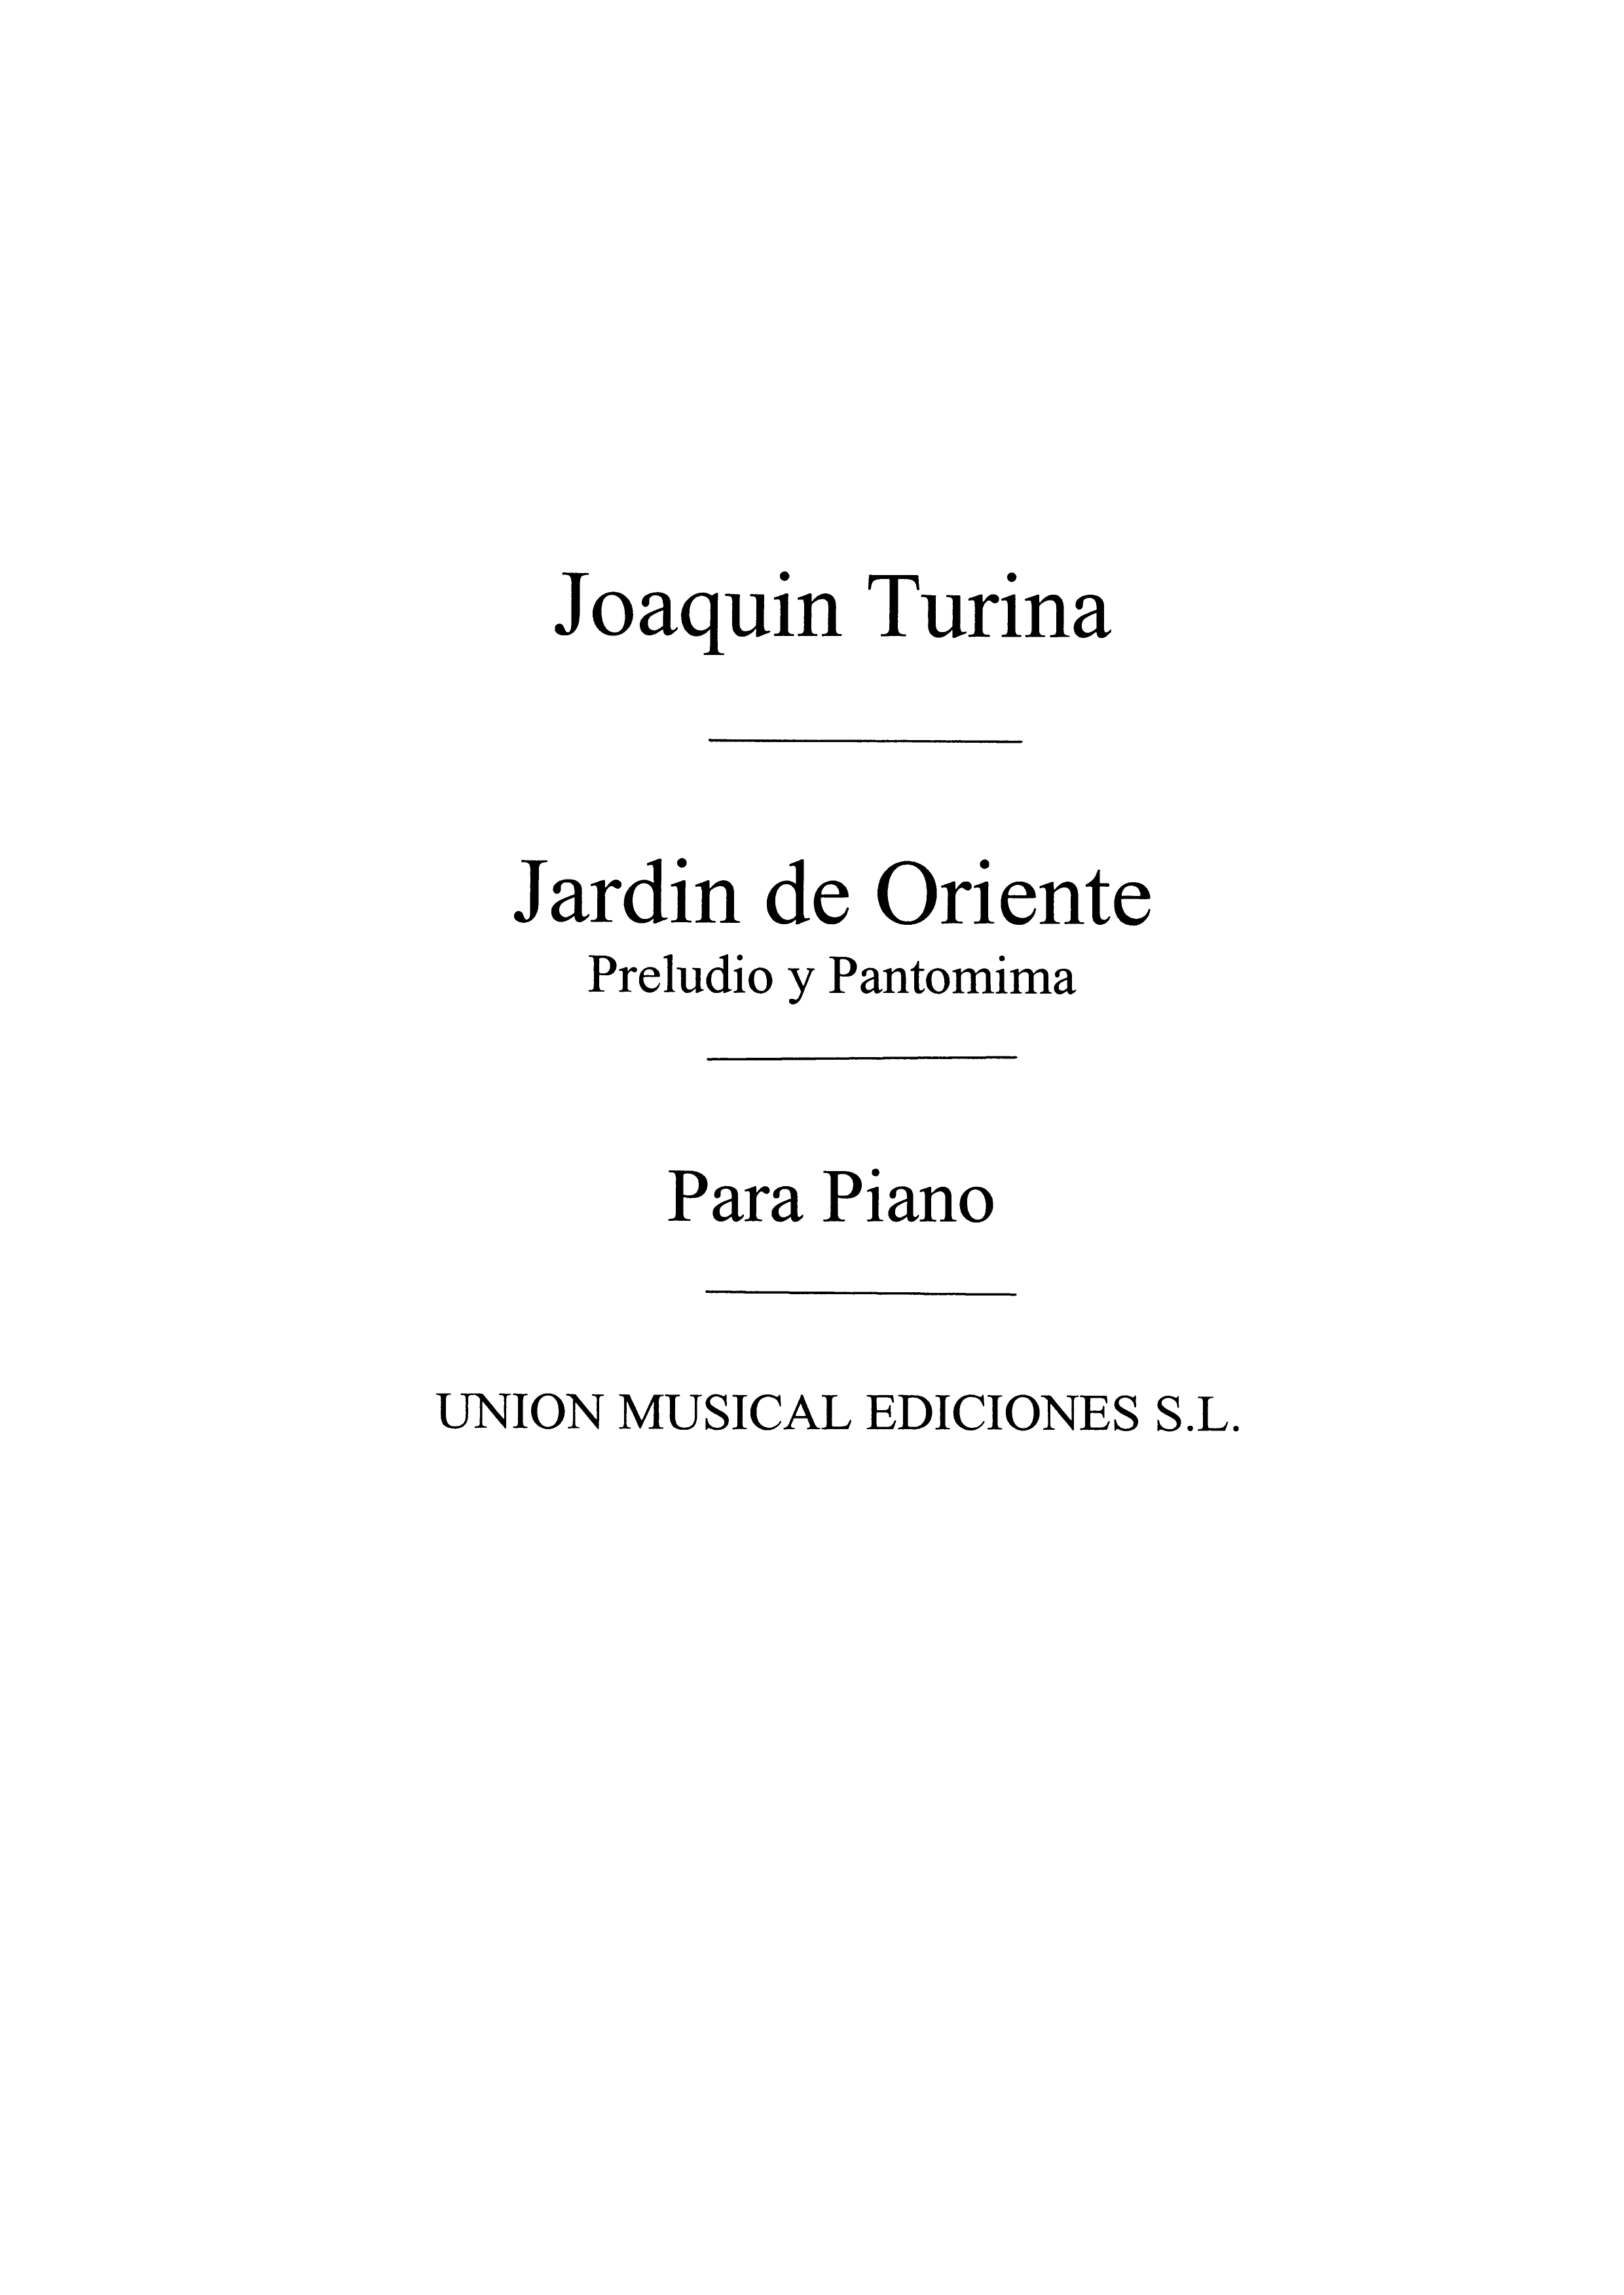 Joaqun Turina: Preludio Y Pentomima De Jardin De Oriente Op.25: Piano: